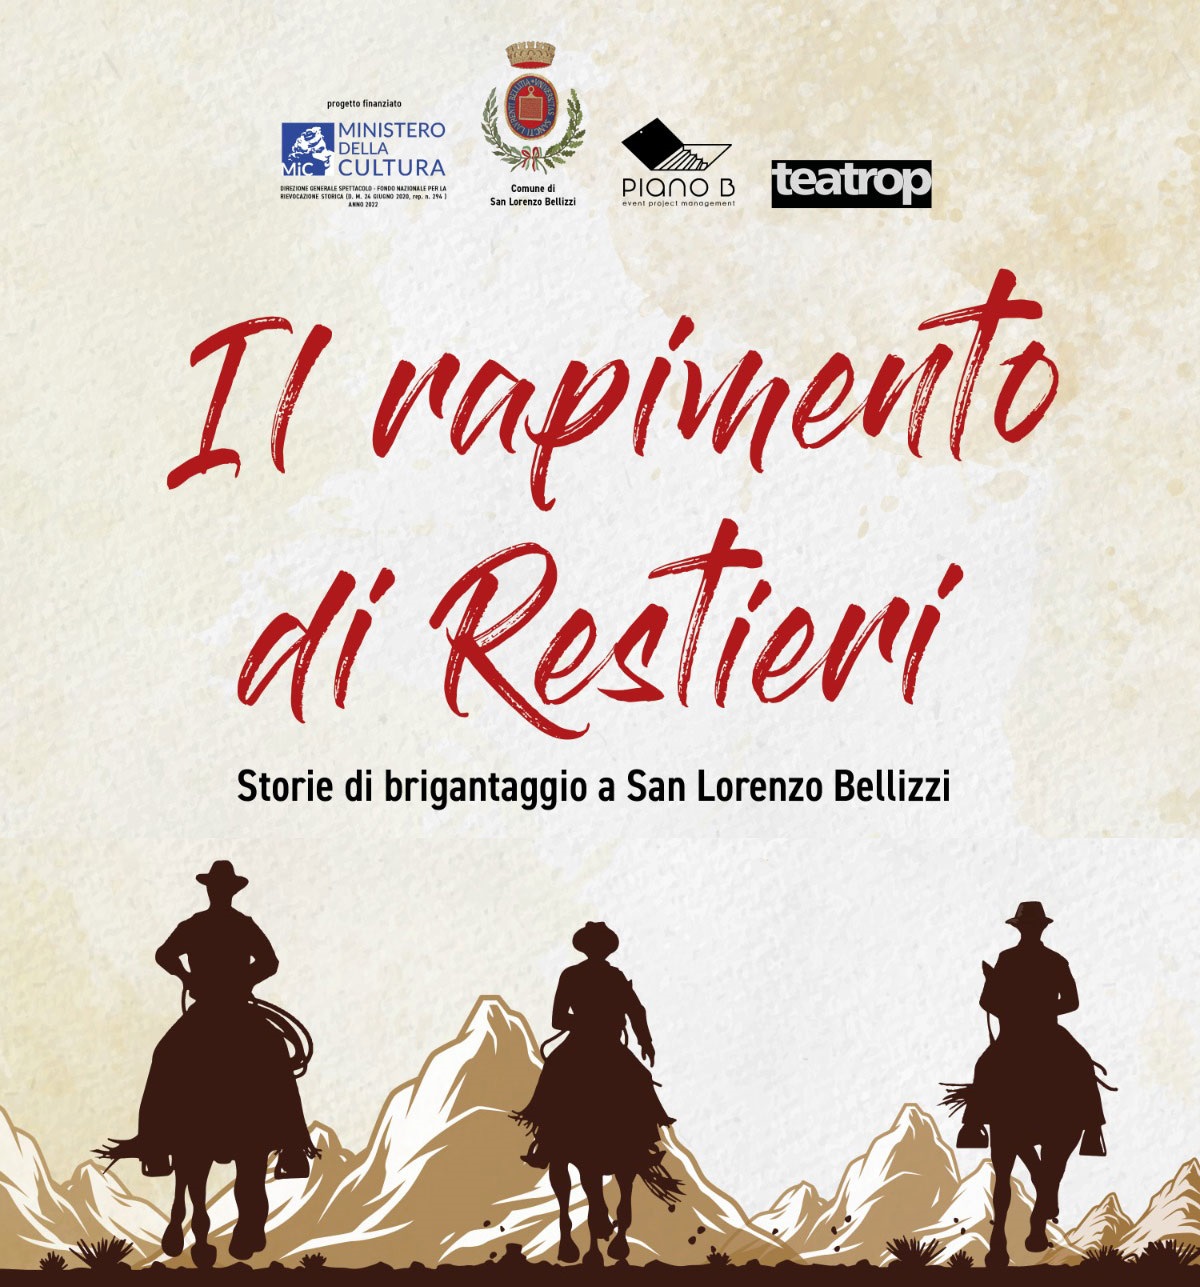 Brigantaggio: San Lorenzo Bellizzi presenta la rievocazione storica del “Rapimento di Restieri”